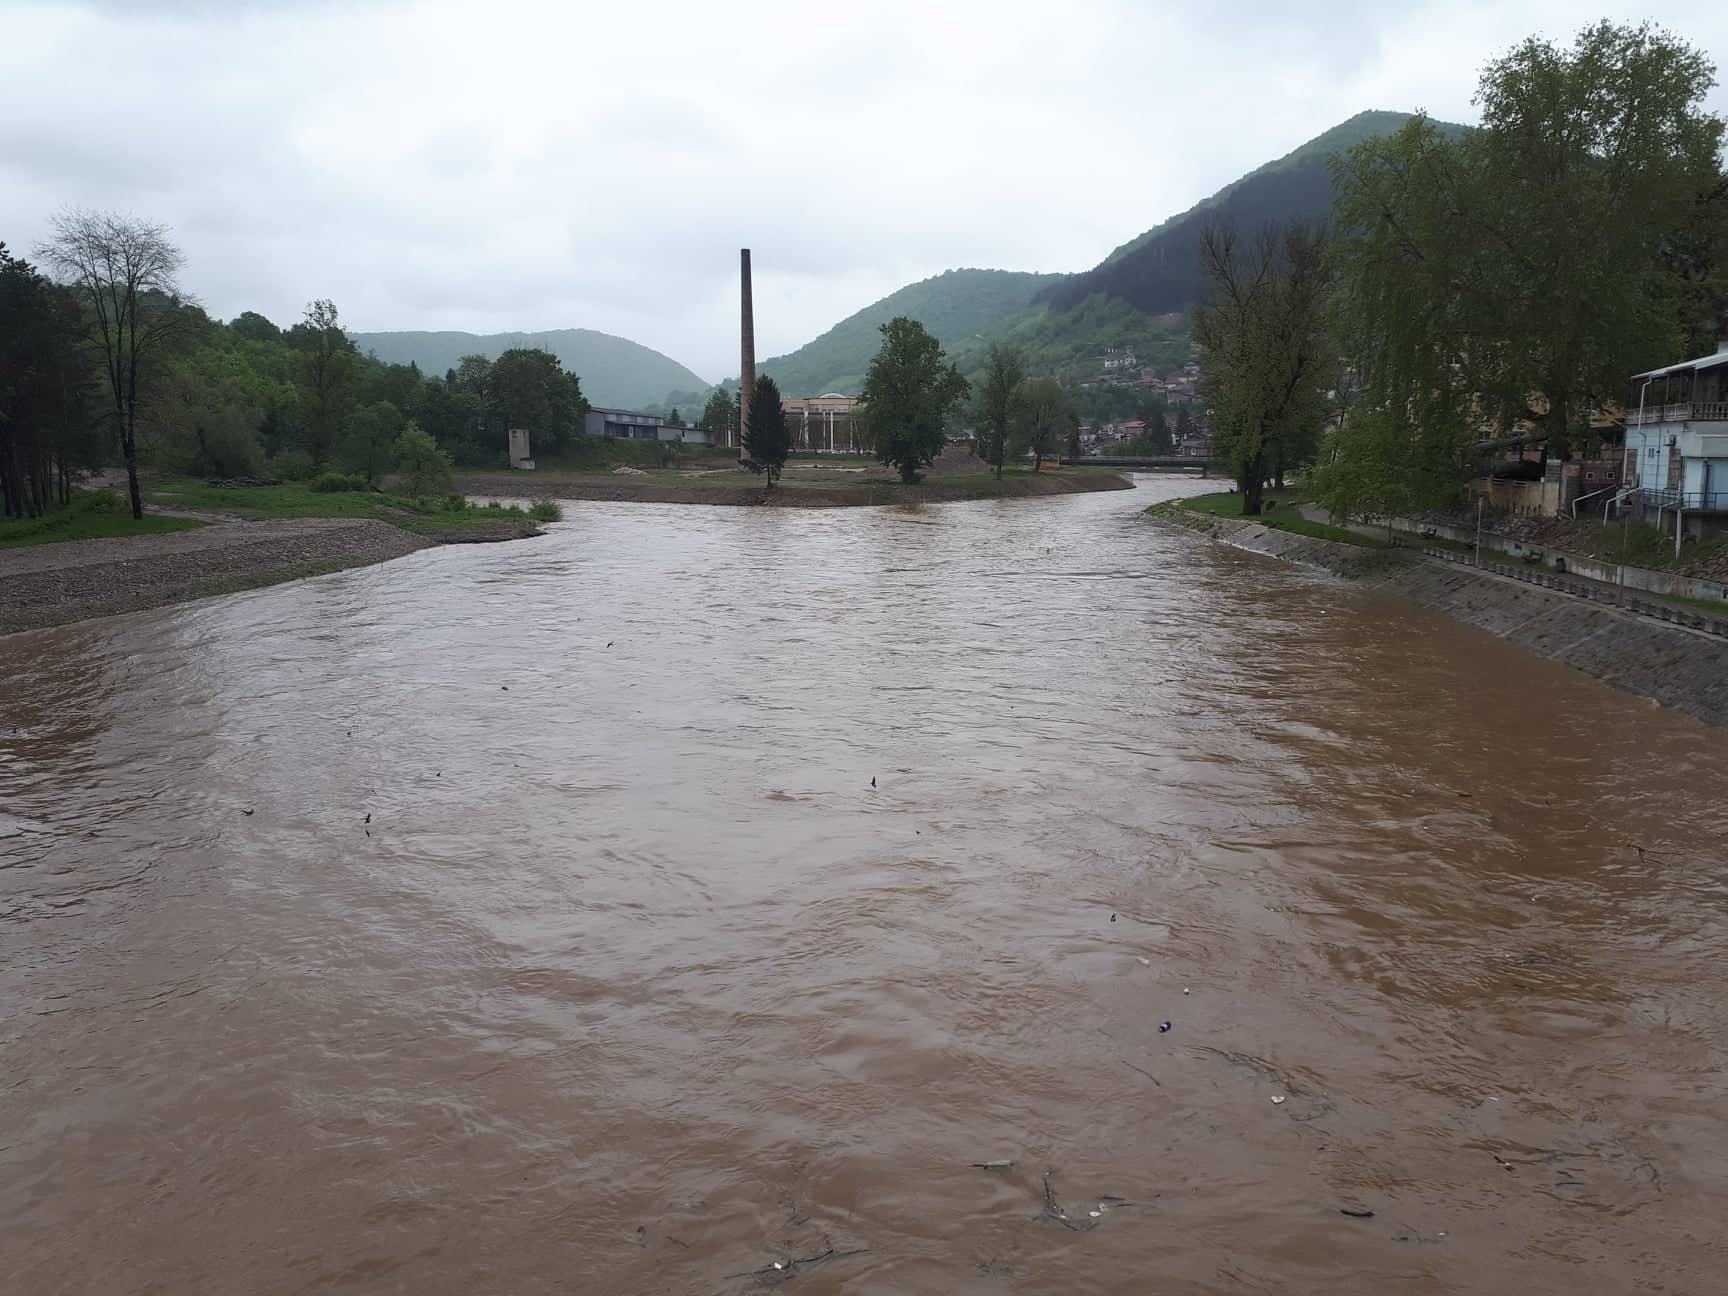 Čista rijeka Bosna: Uspostavljeni Timovi Akcione grupe u Visokom i Ilijašu